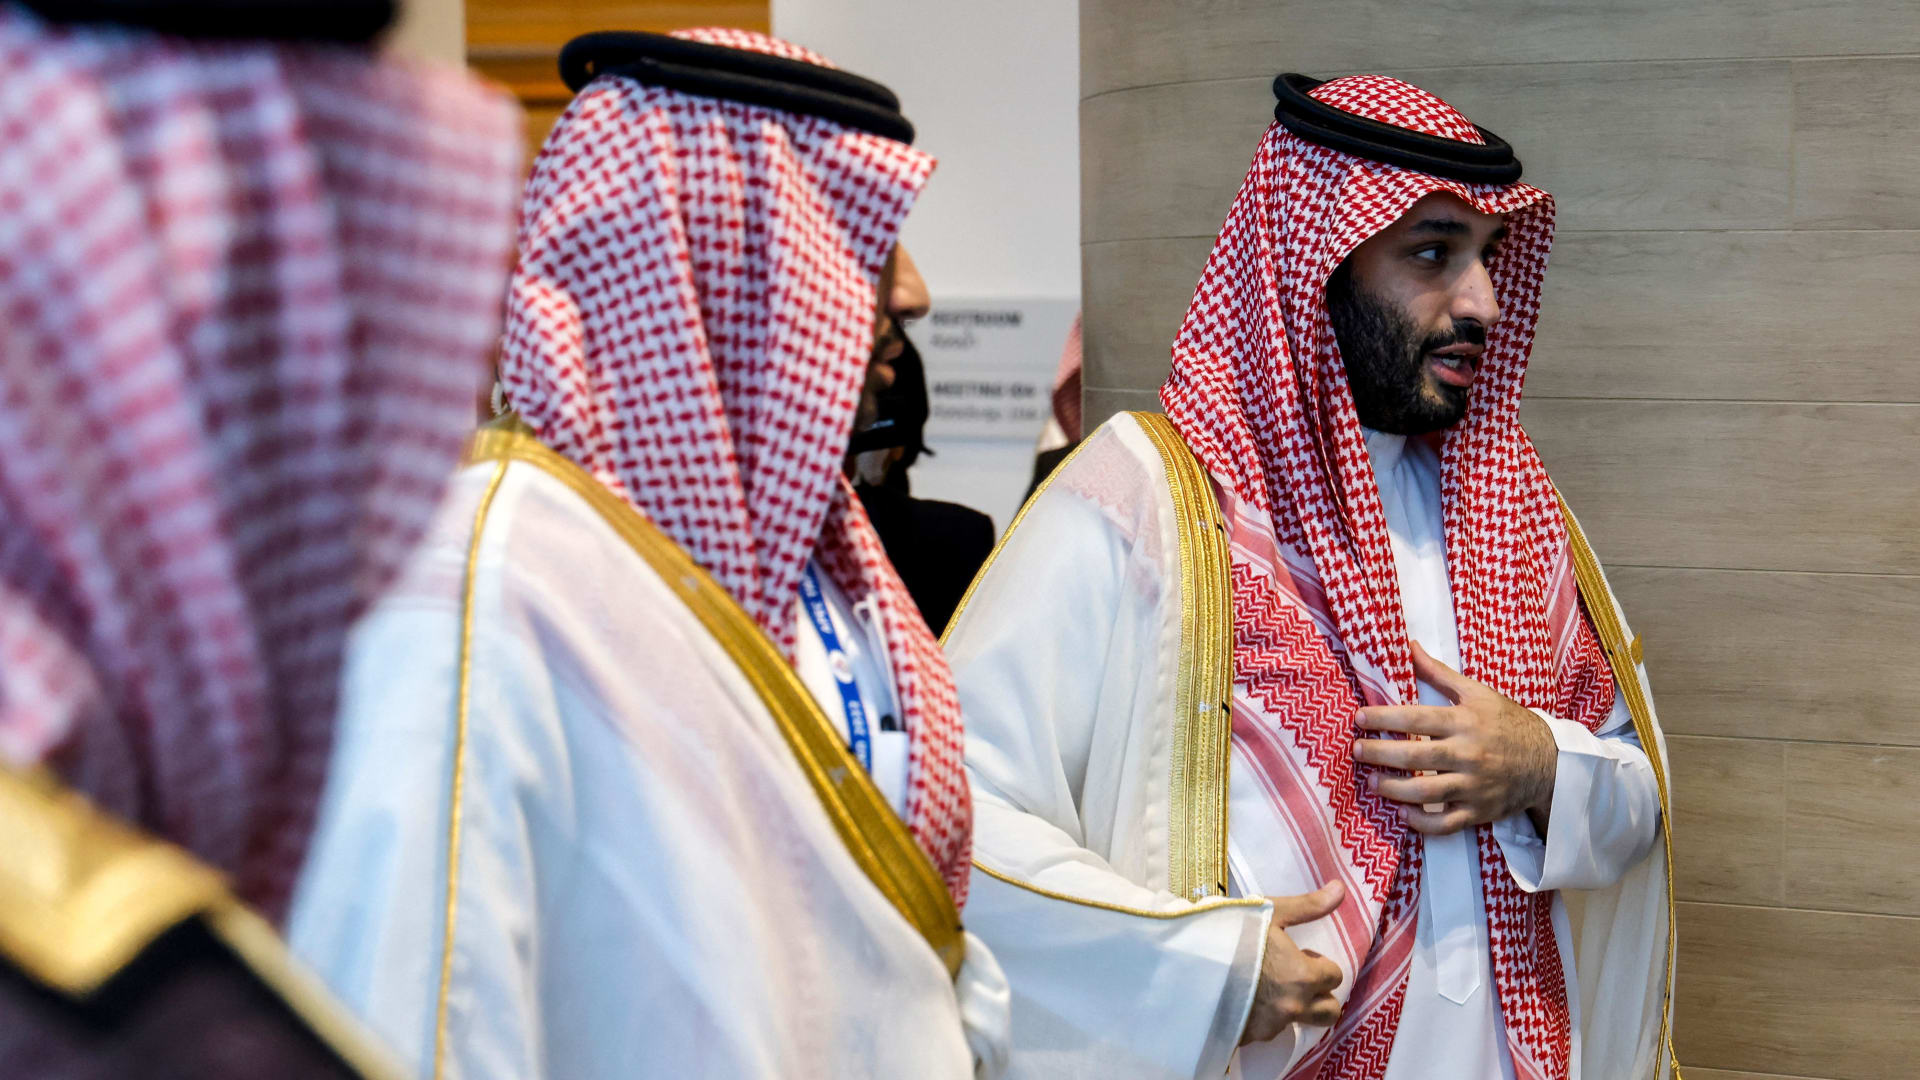 "محنا مستعجلين على دور الـ16".. المؤثر السعودي رائد سليم يعلق على خسارة وهذه ردود فعل بعض الجماهير